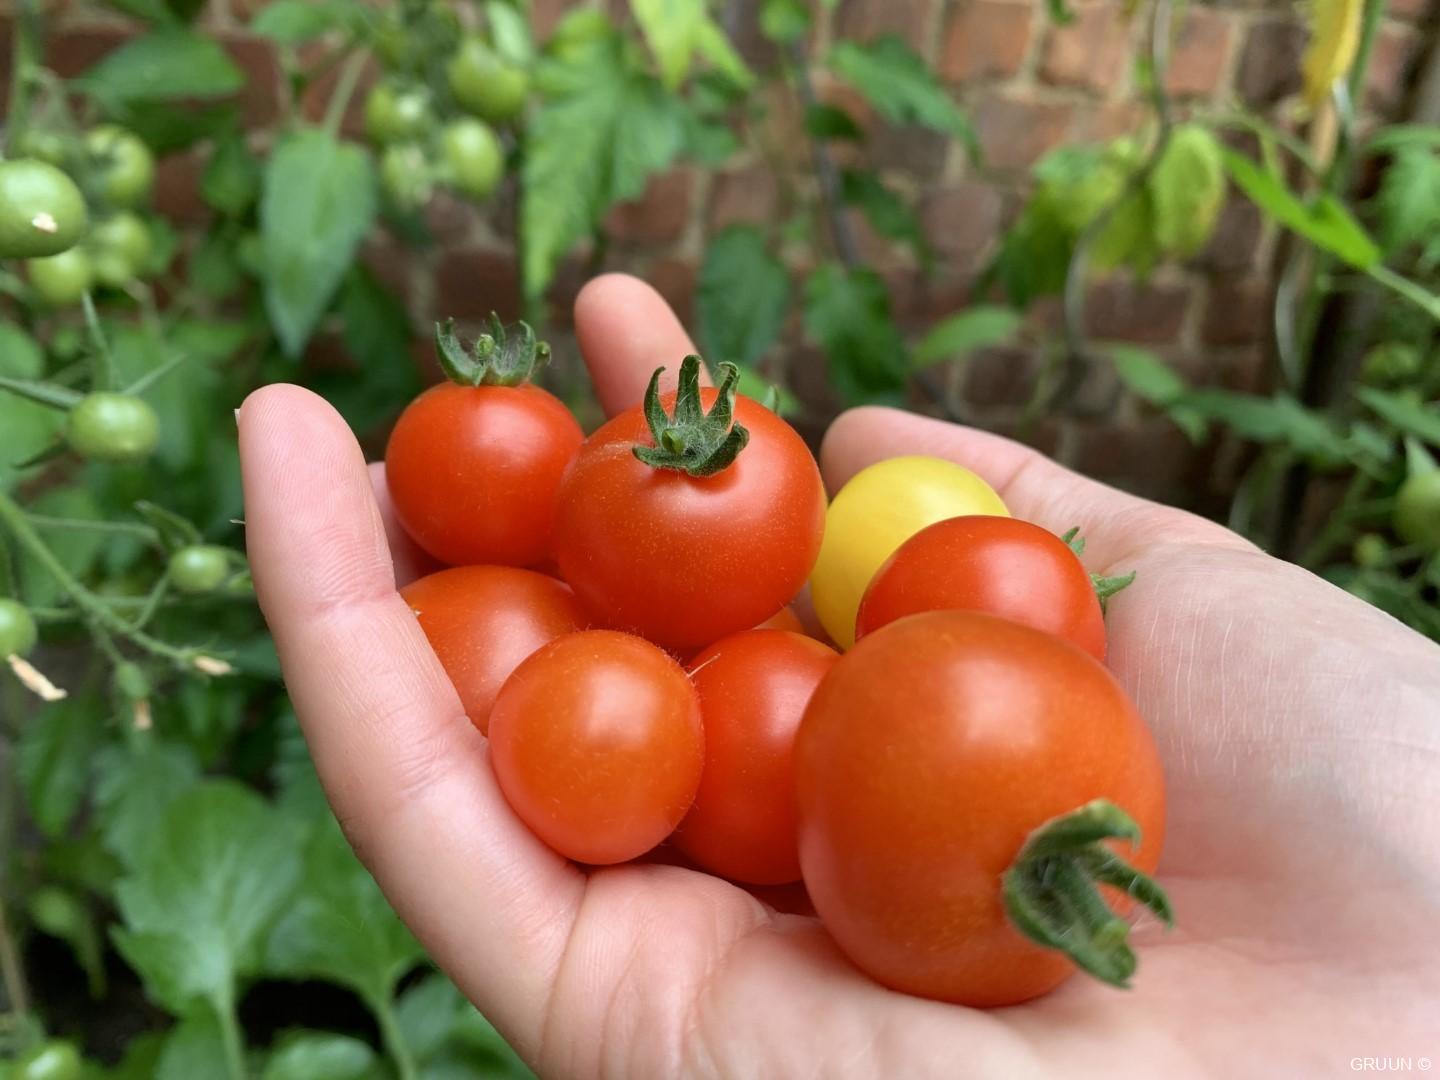 5 makkelijke planten voor je eetbare tuin